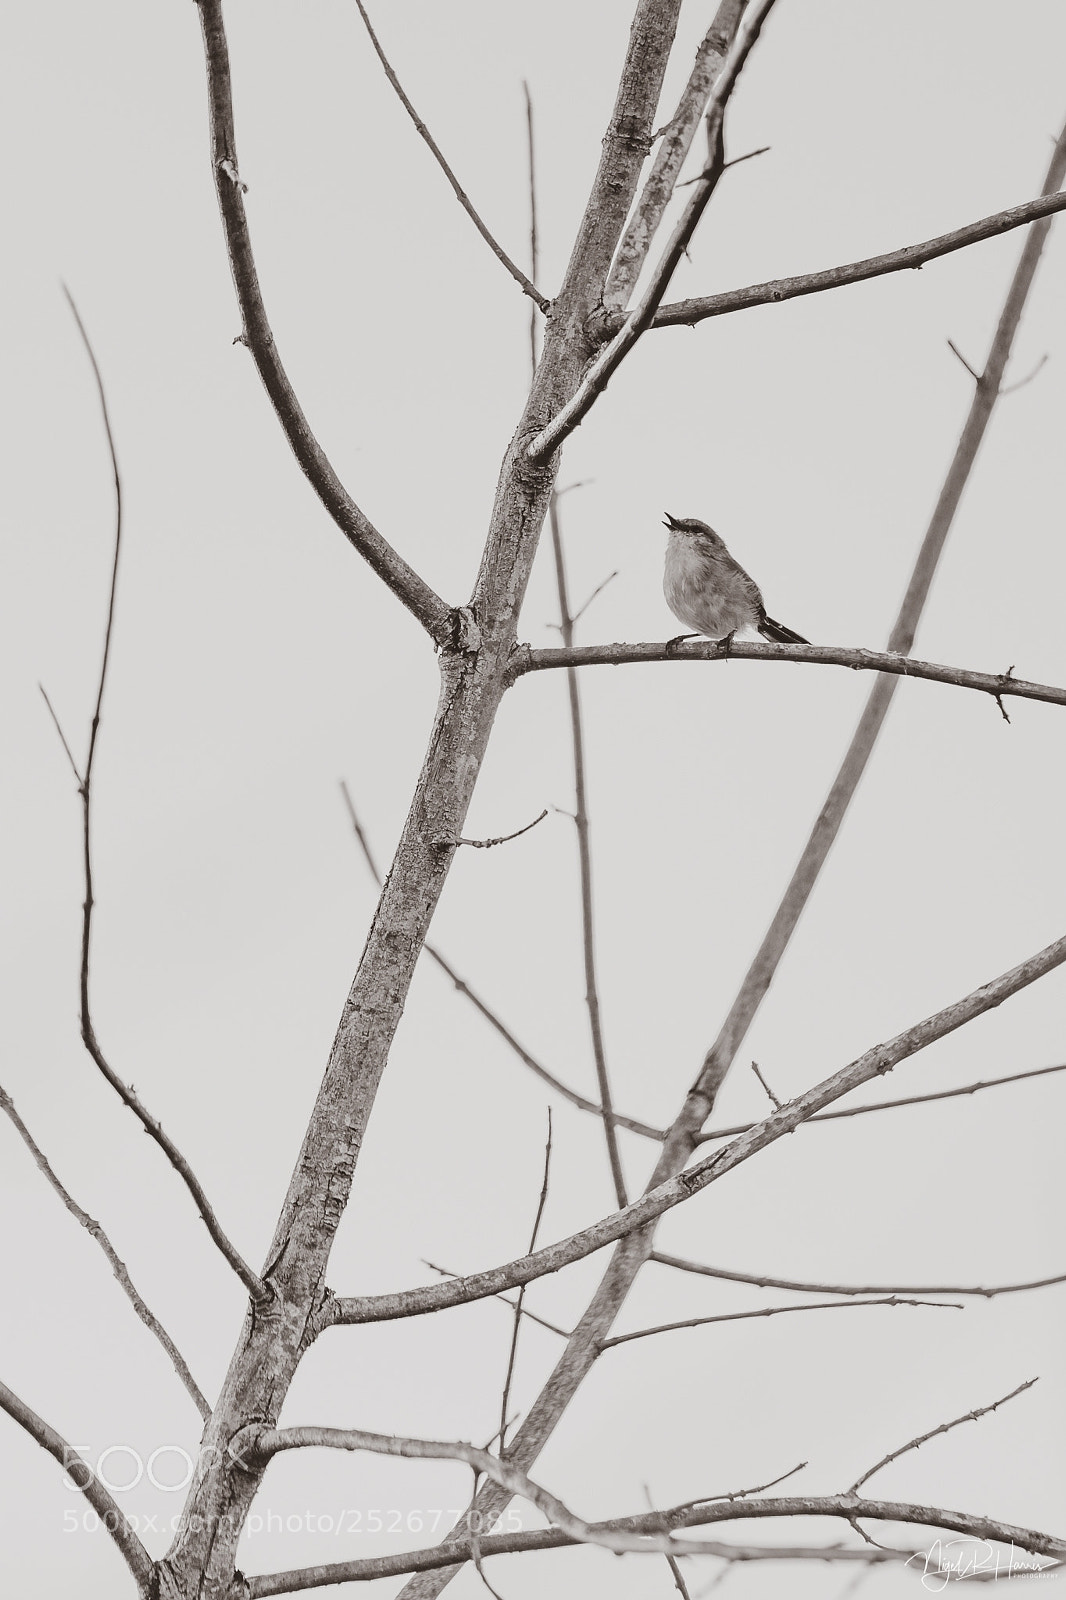 Canon EOS 5D Mark IV sample photo. Small bird in a photography